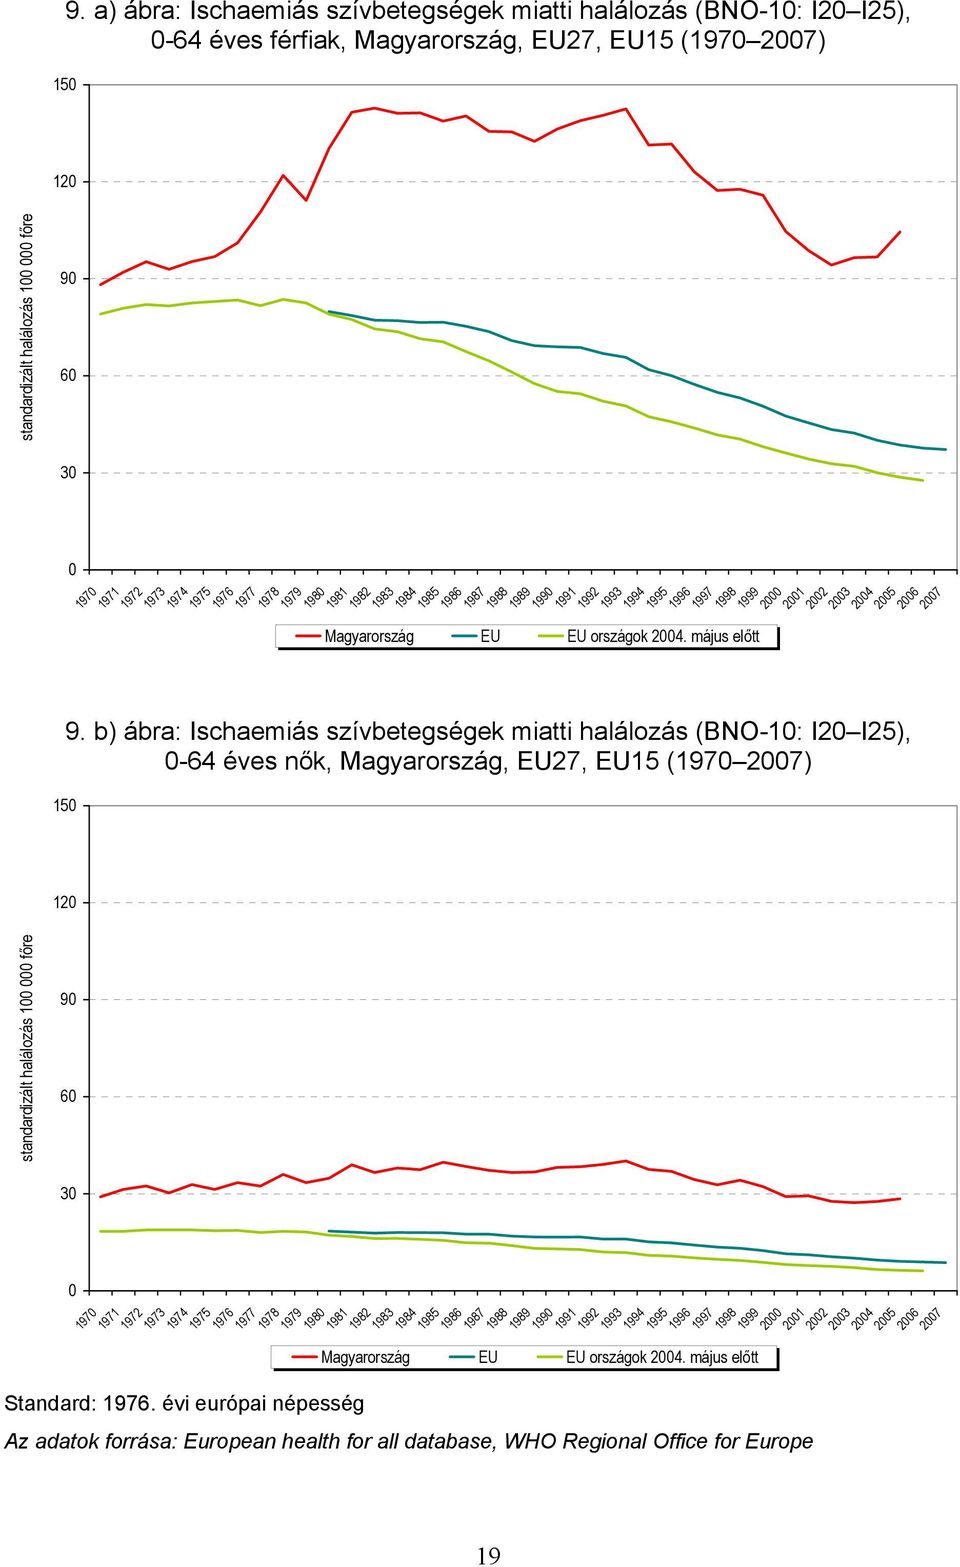 b) ábra: Ischaemiás szívbetegségek miatti halálozás (BNO-1: I2 I25), -64 éves nők, Magyarország, EU27, EU15 (197 27) standardizált halálozás 1 főre 9 6